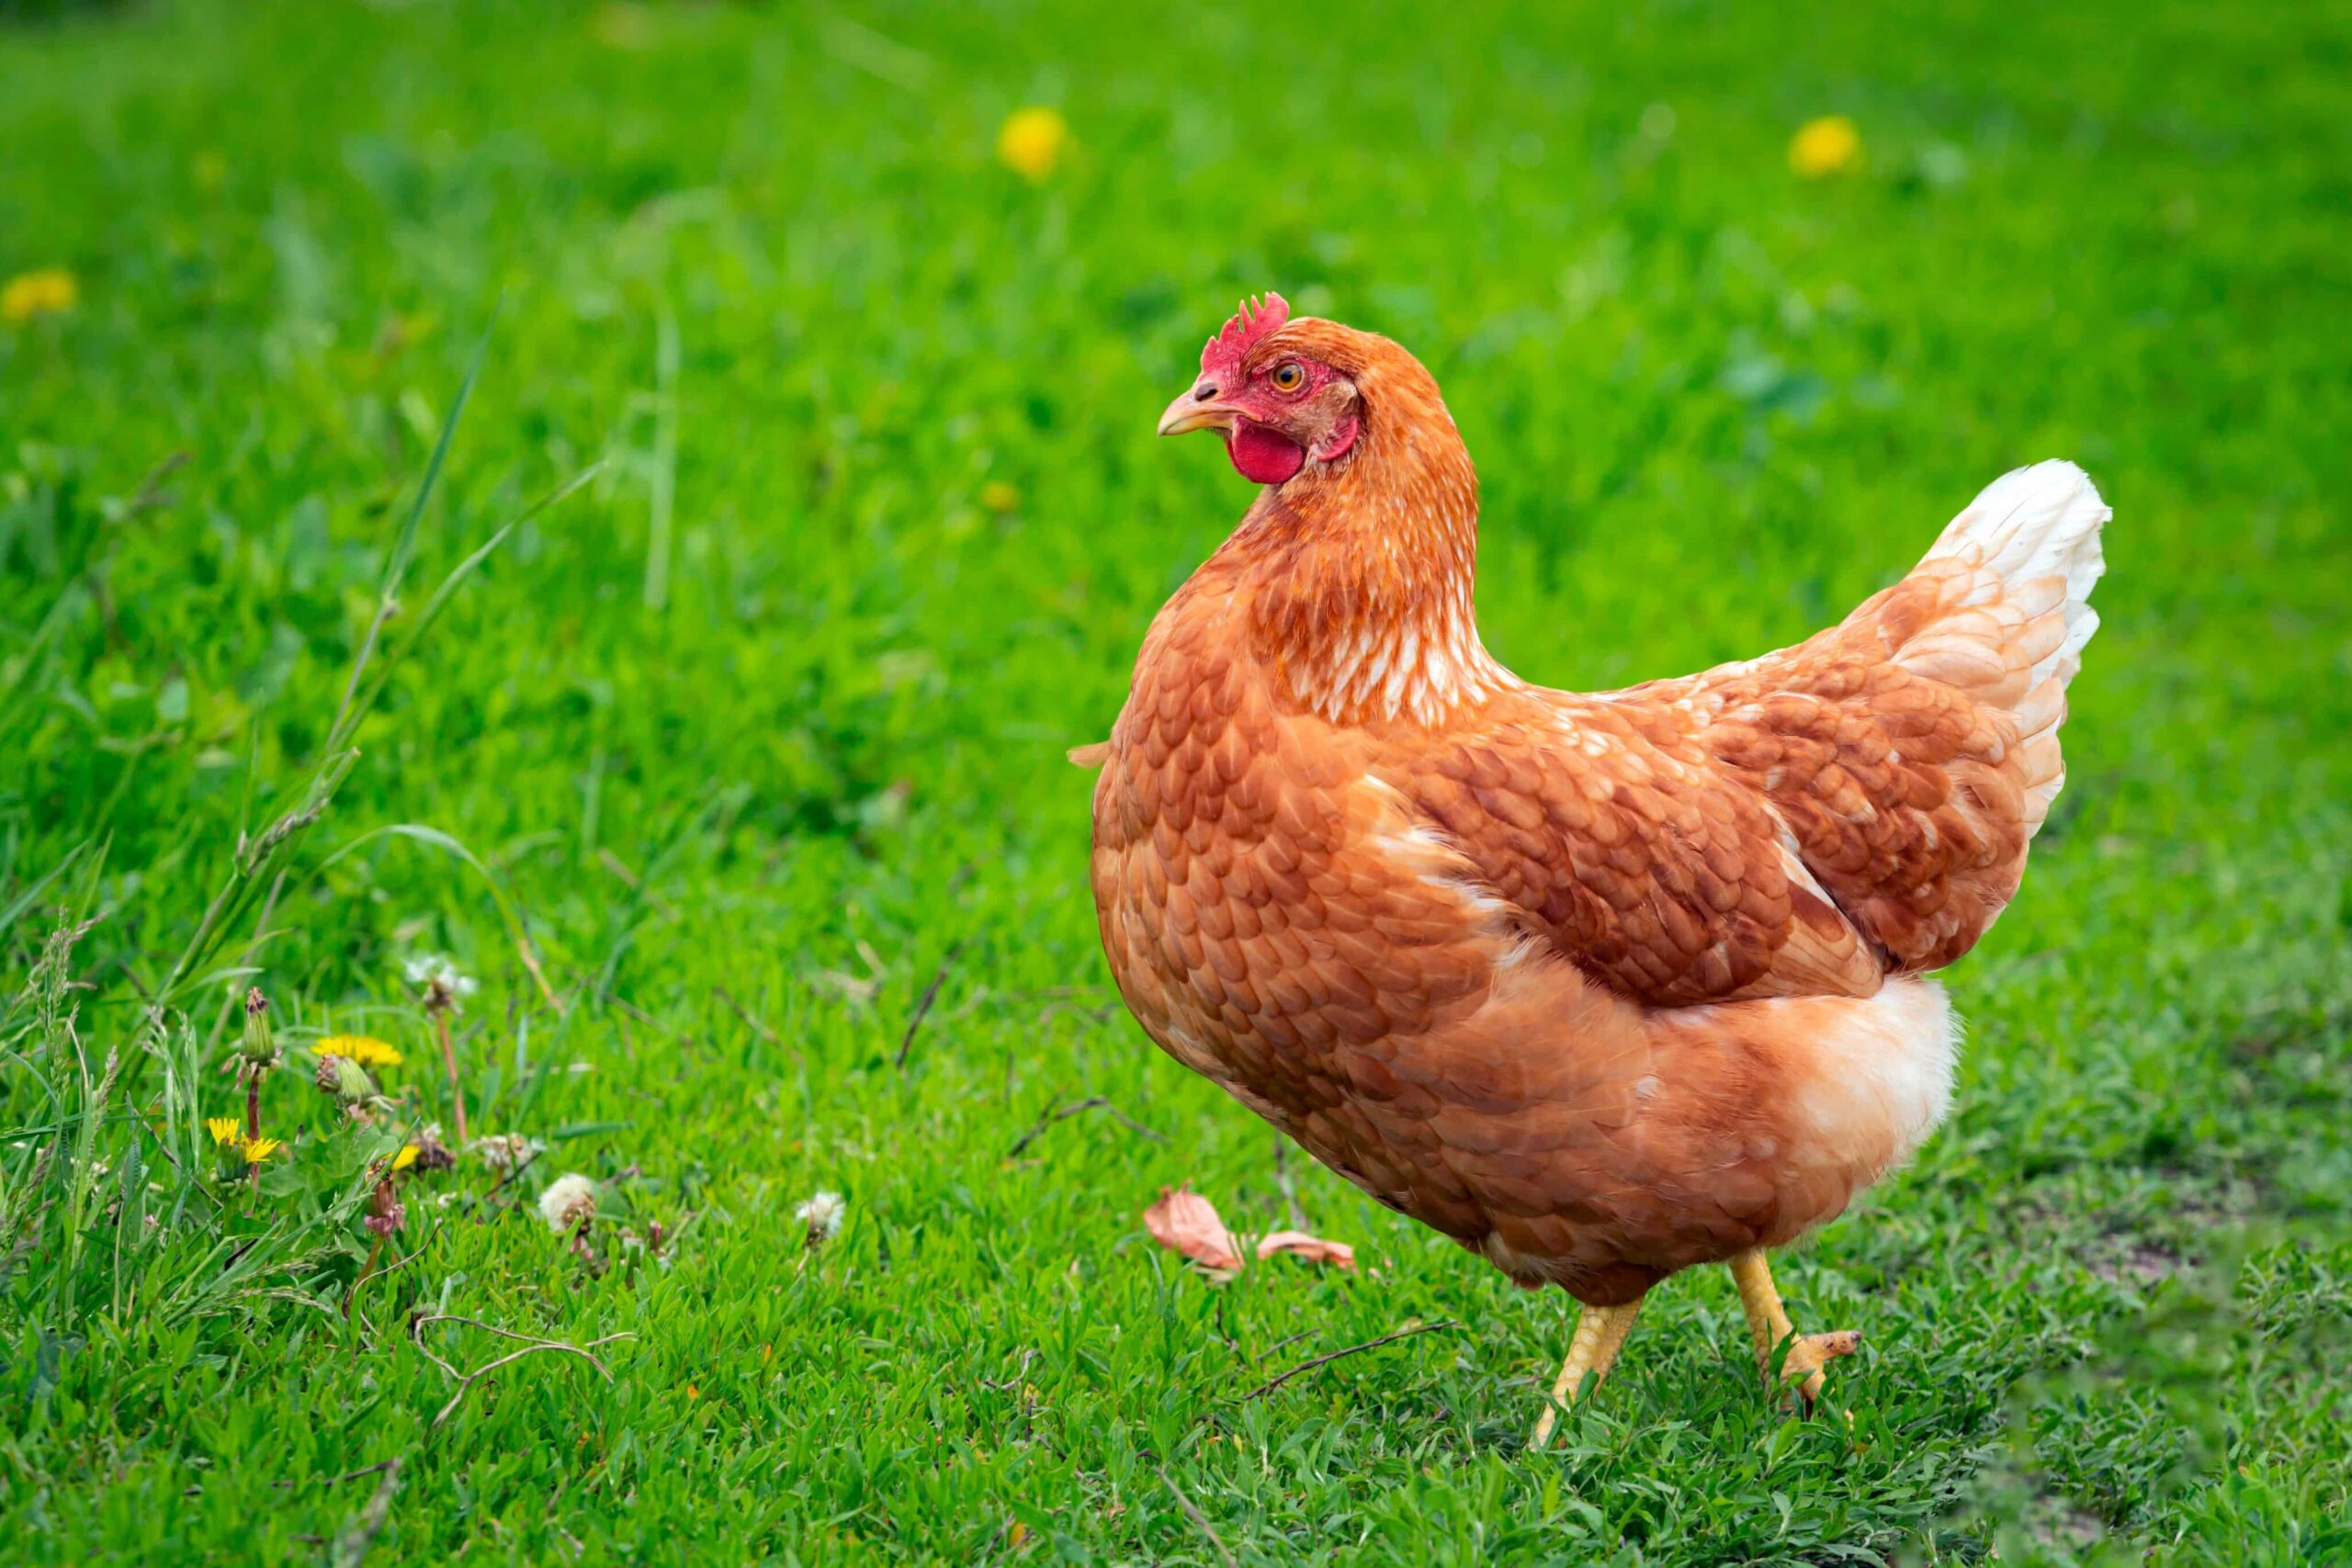 Farinha de sementes de cânhamo para galinhas recebe recomendação para aprovação federal